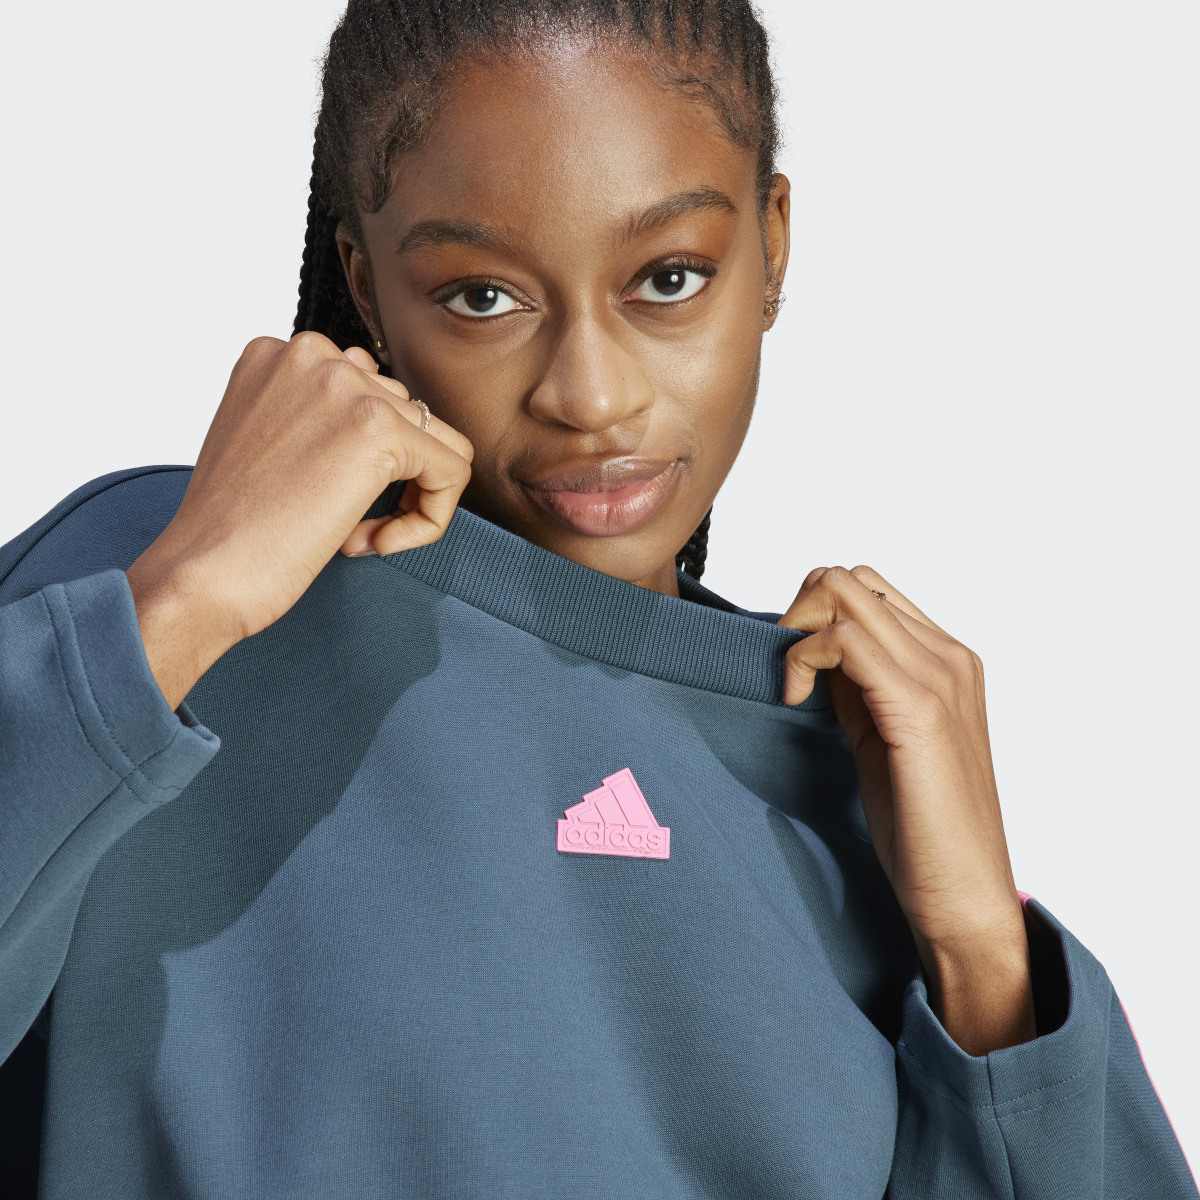 Adidas Future Icons 3-Streifen Sweatshirt. 6